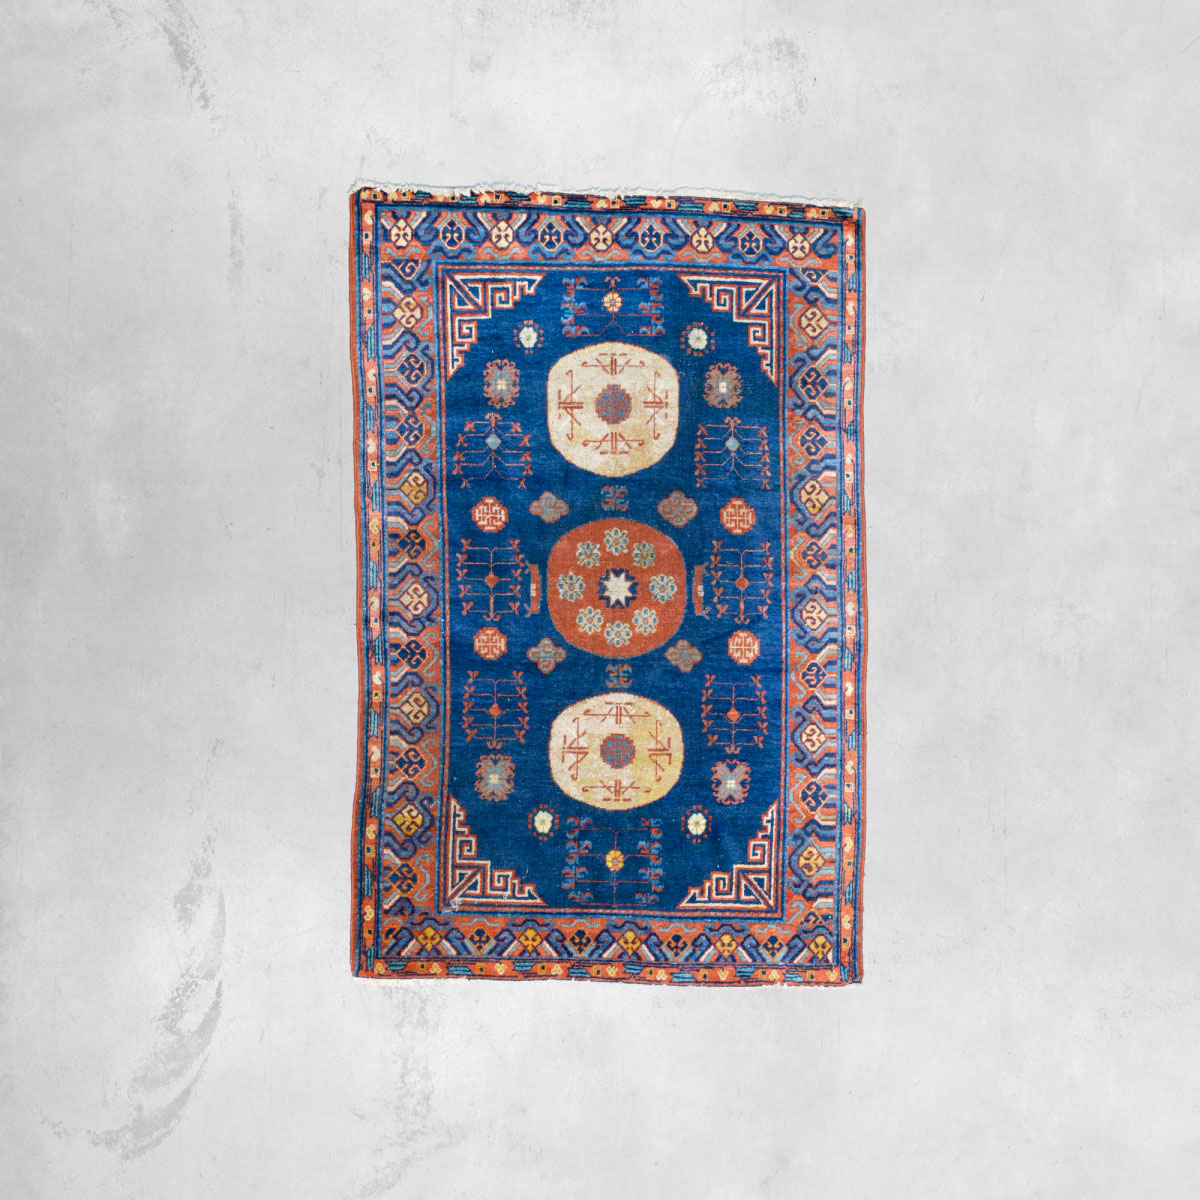 Sammarcanda carpet | 180 x 118 cm Antique carpets - Europe  pic-1